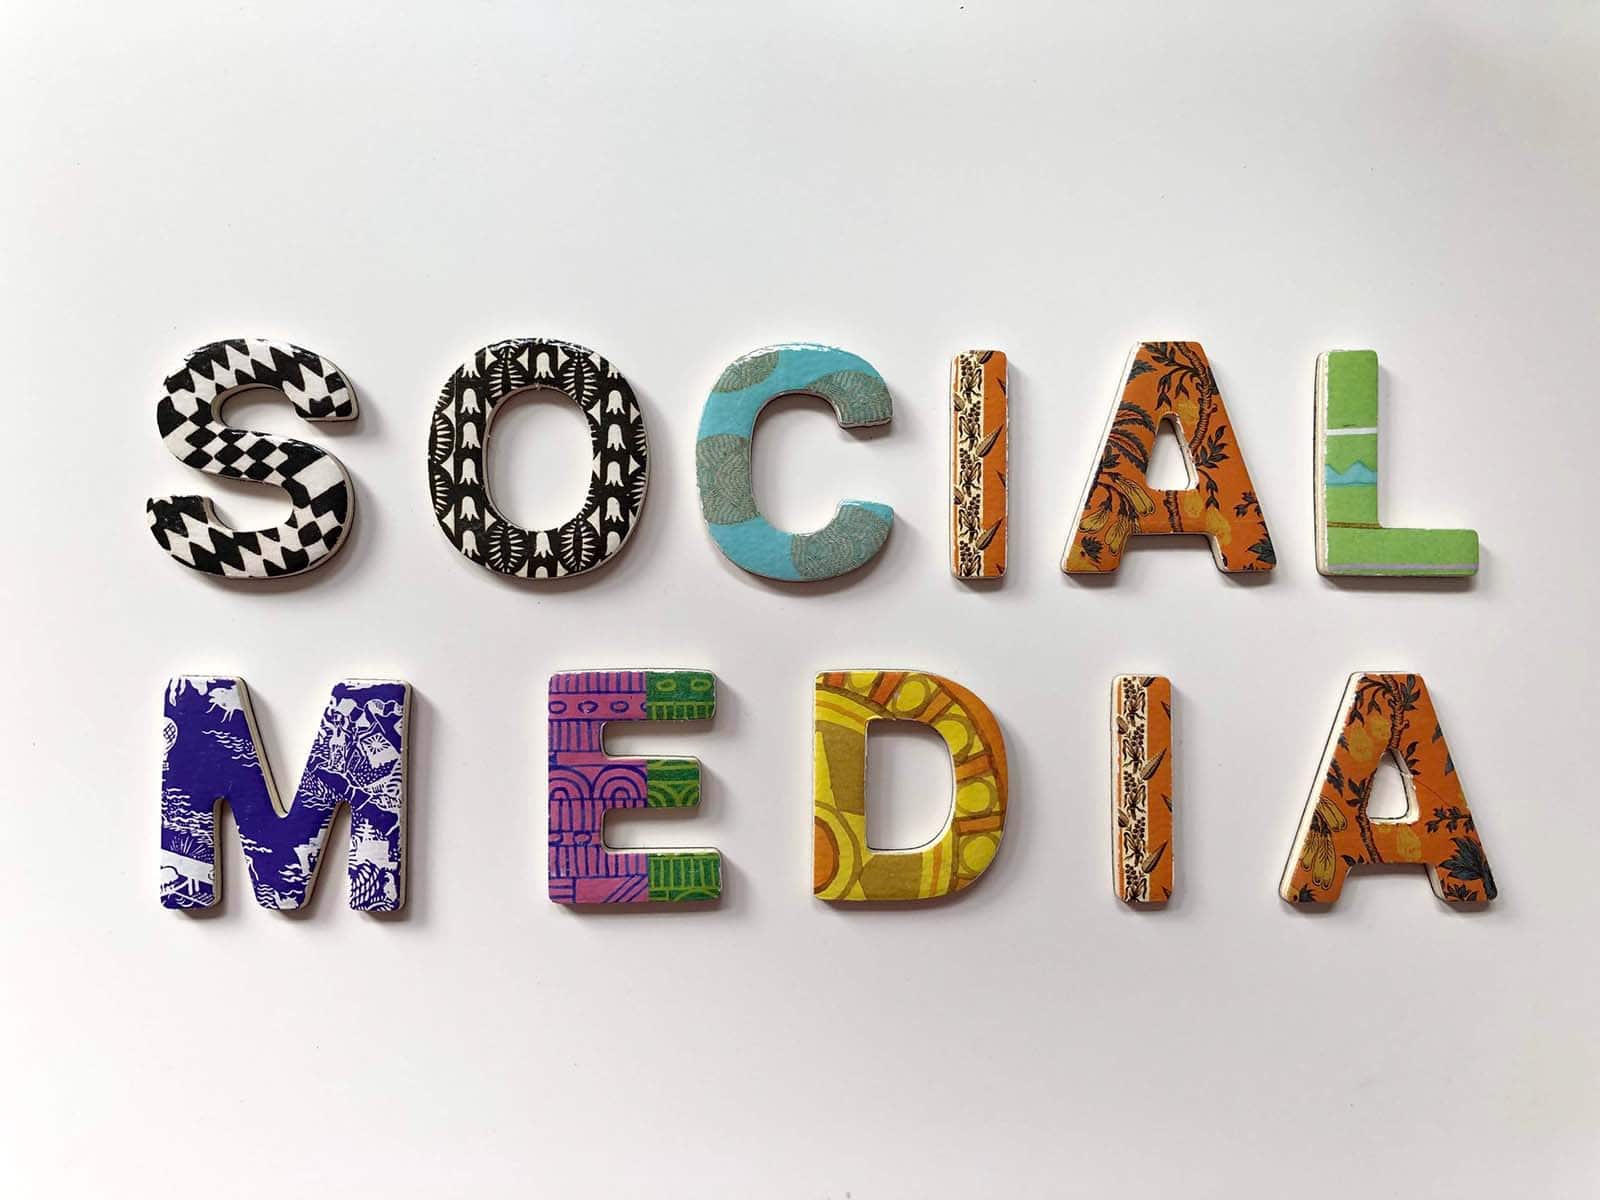 Importance of Social Media Marketing